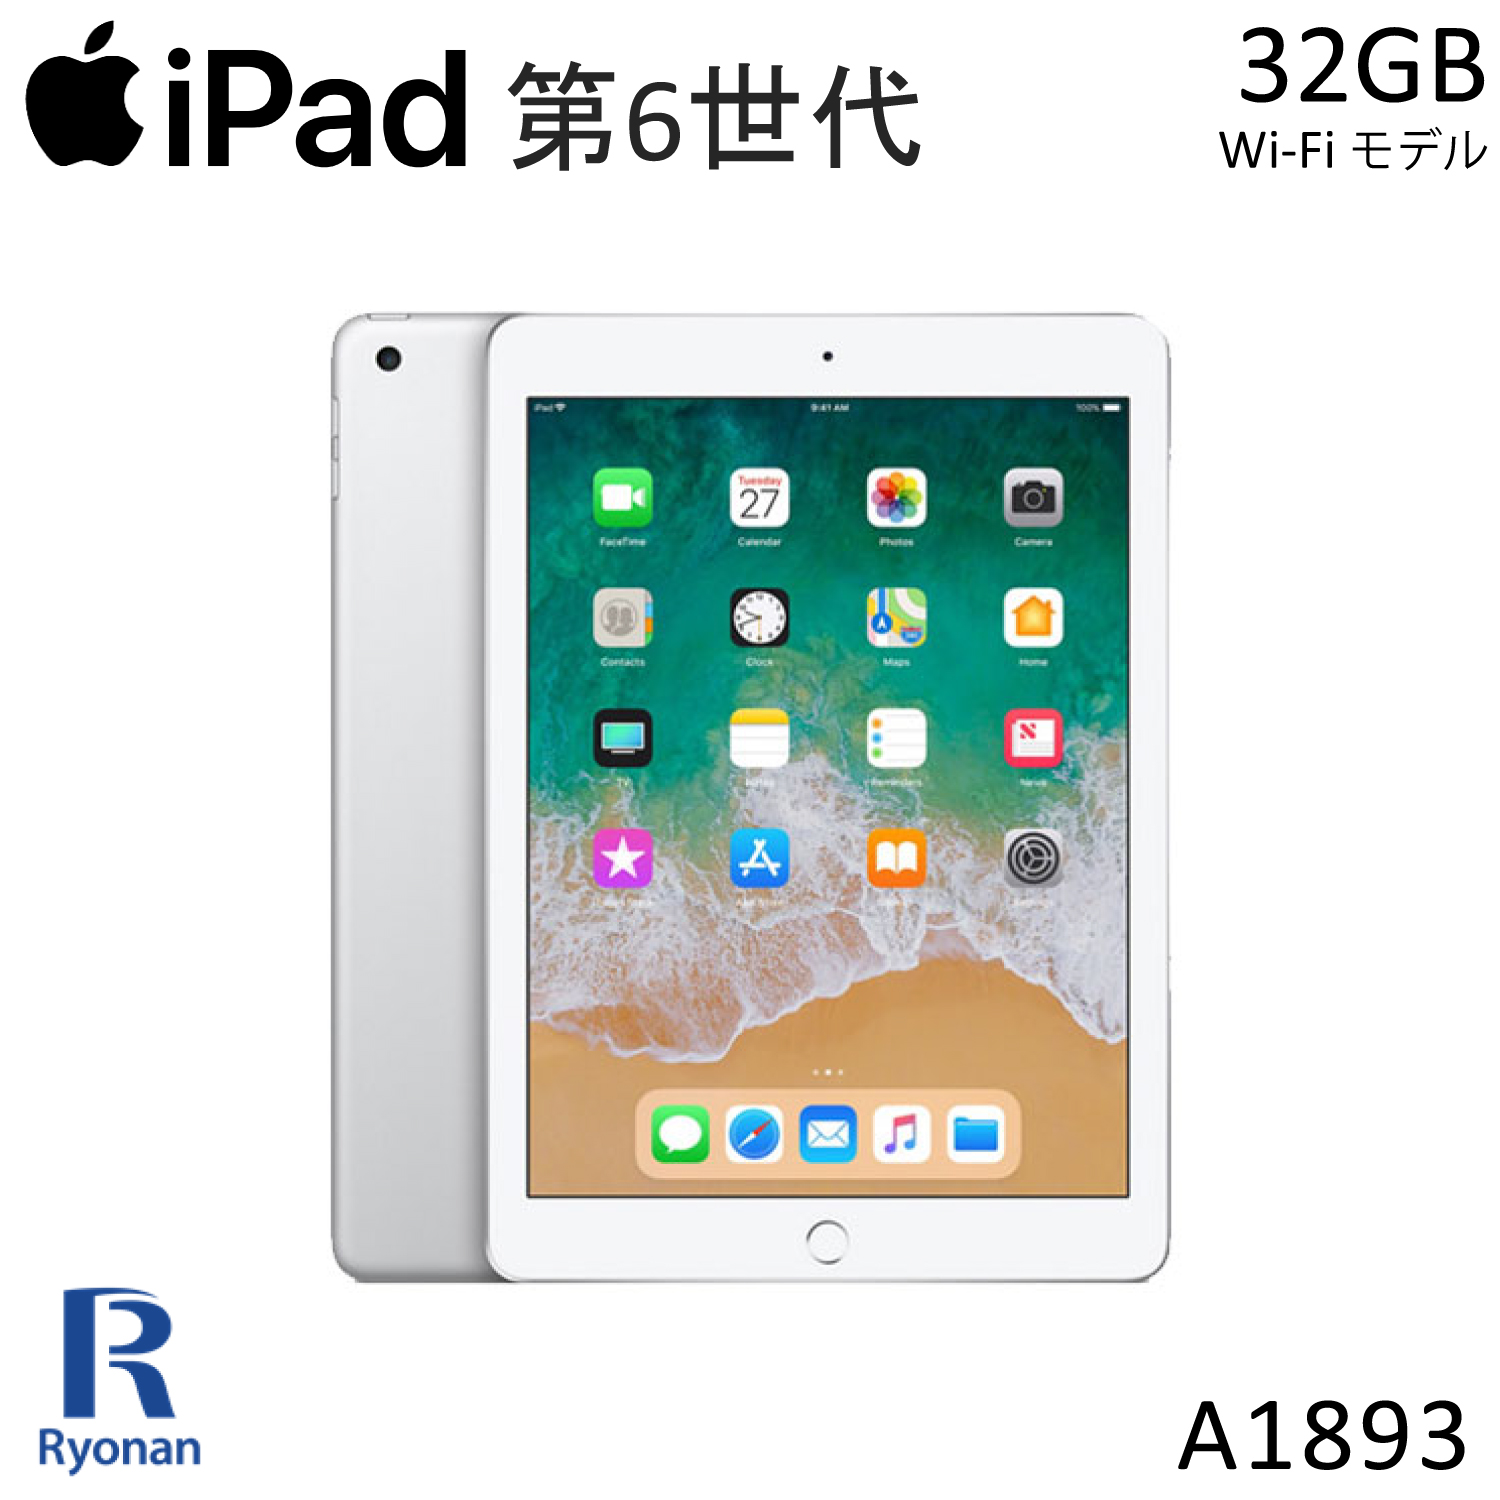 初期設定不要 すぐ使える 海外限定 品揃え業界トップクラス 日本全国送料無料 遼南商店 中古パソコンRYONAN 安心保証付き iPad6 2018年モデル Wi-Fi シルバー Retinaディスプレイ 第6世代 Apple アイパッド A1893 Wi-Fiモデル 32GB 中古 限定タイムセール iPad 9.7インチ タブレット